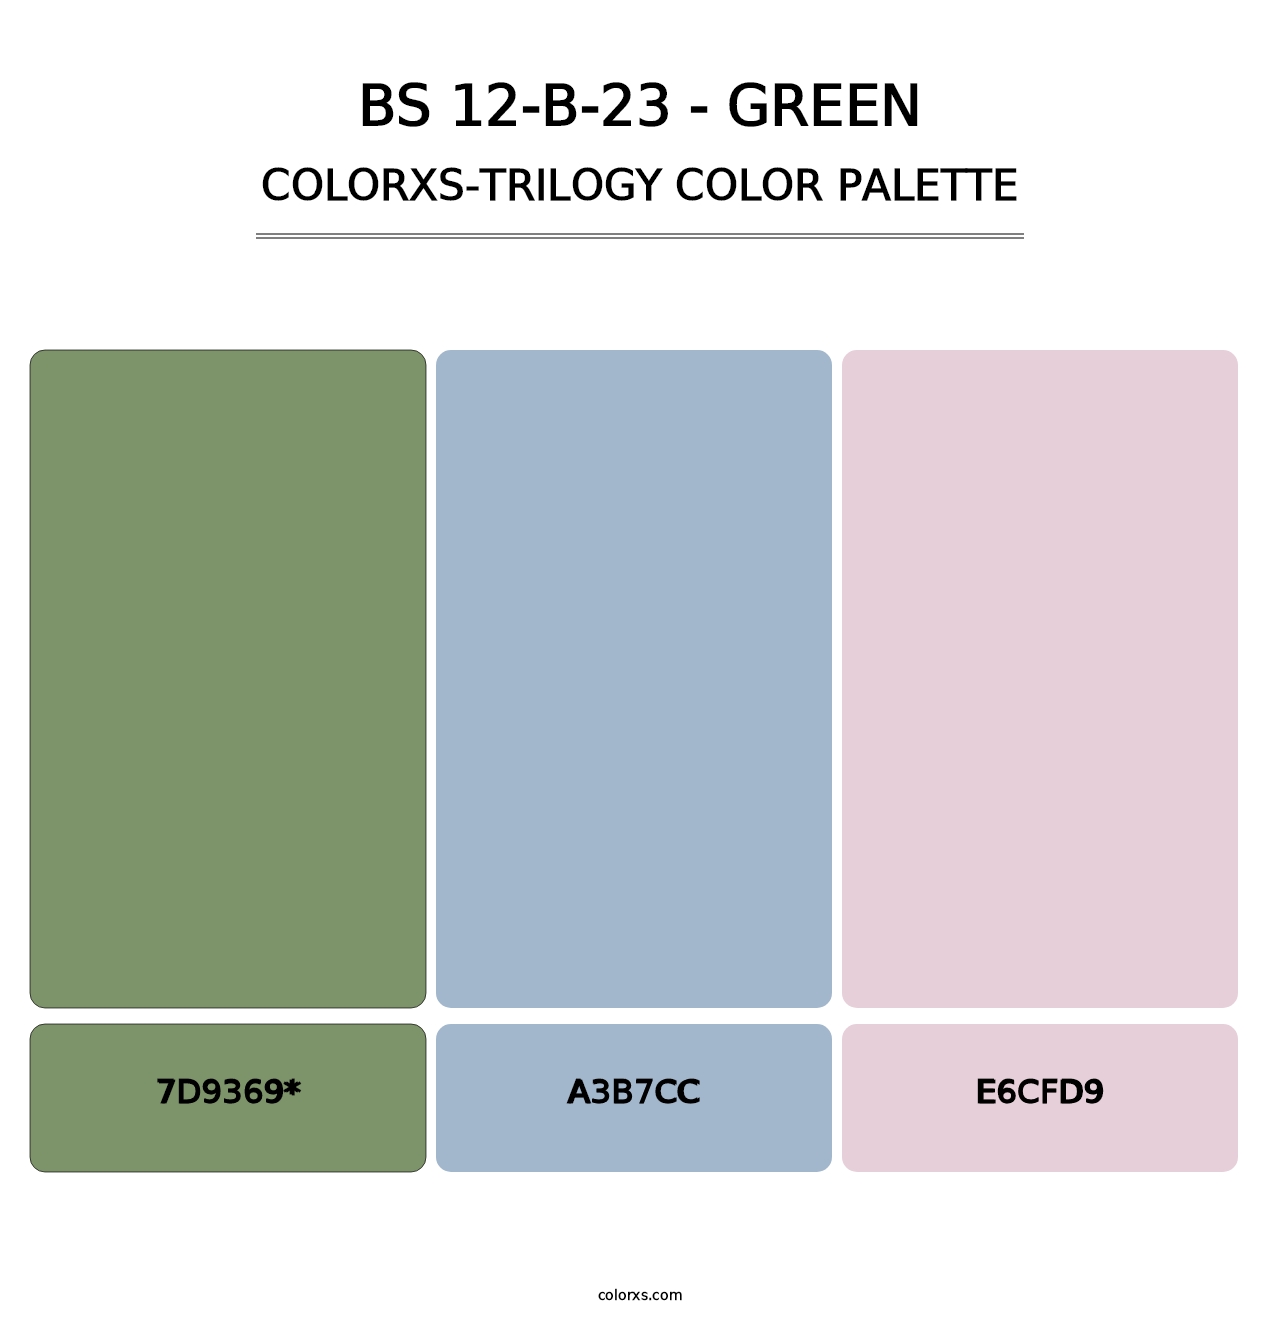 BS 12-B-23 - Green - Colorxs Trilogy Palette